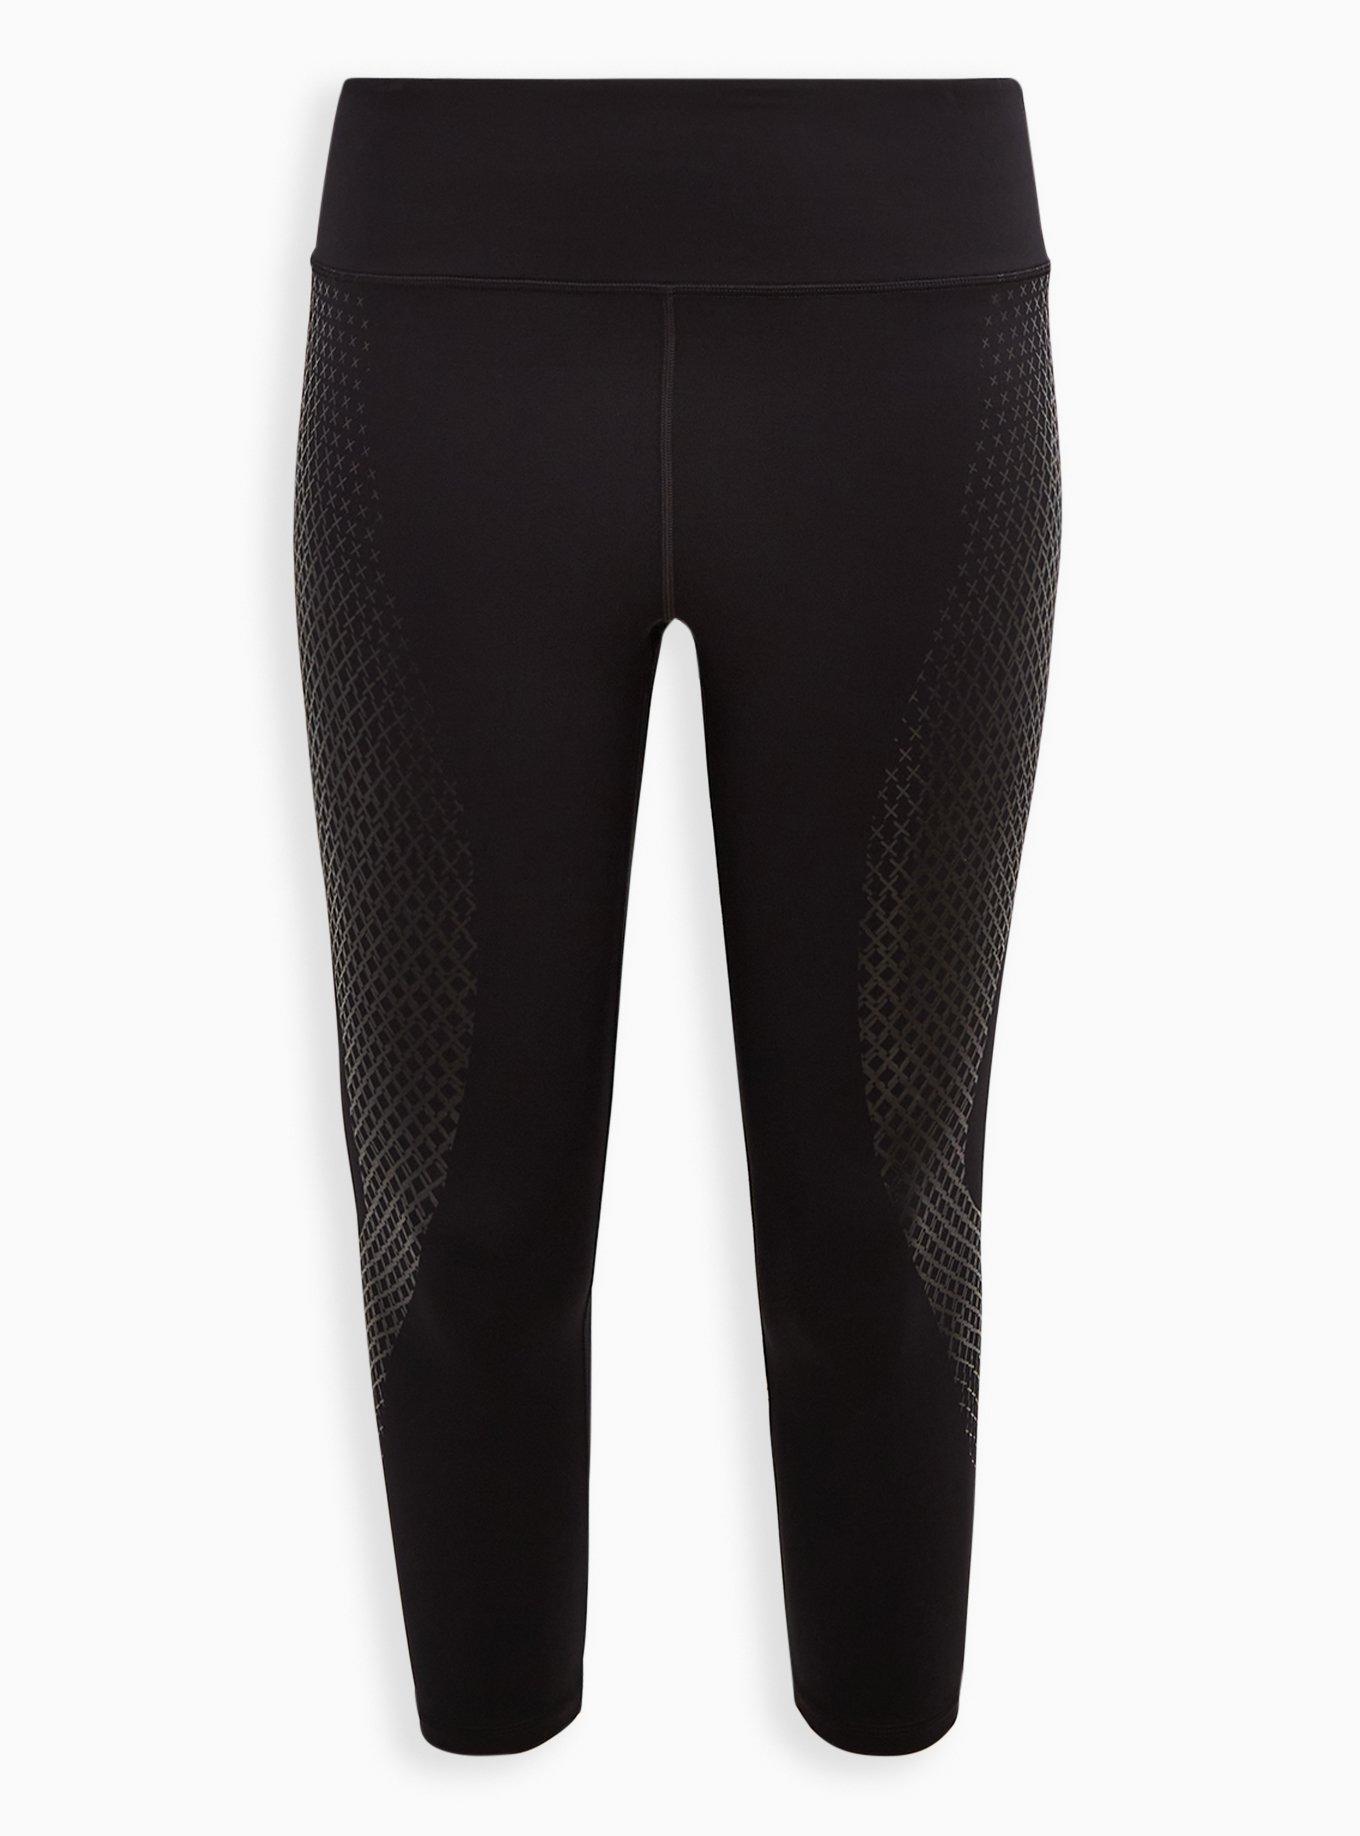 torrid, Pants & Jumpsuits, Torrid Mermaid Scale Black Premium Leggings  Size 3x